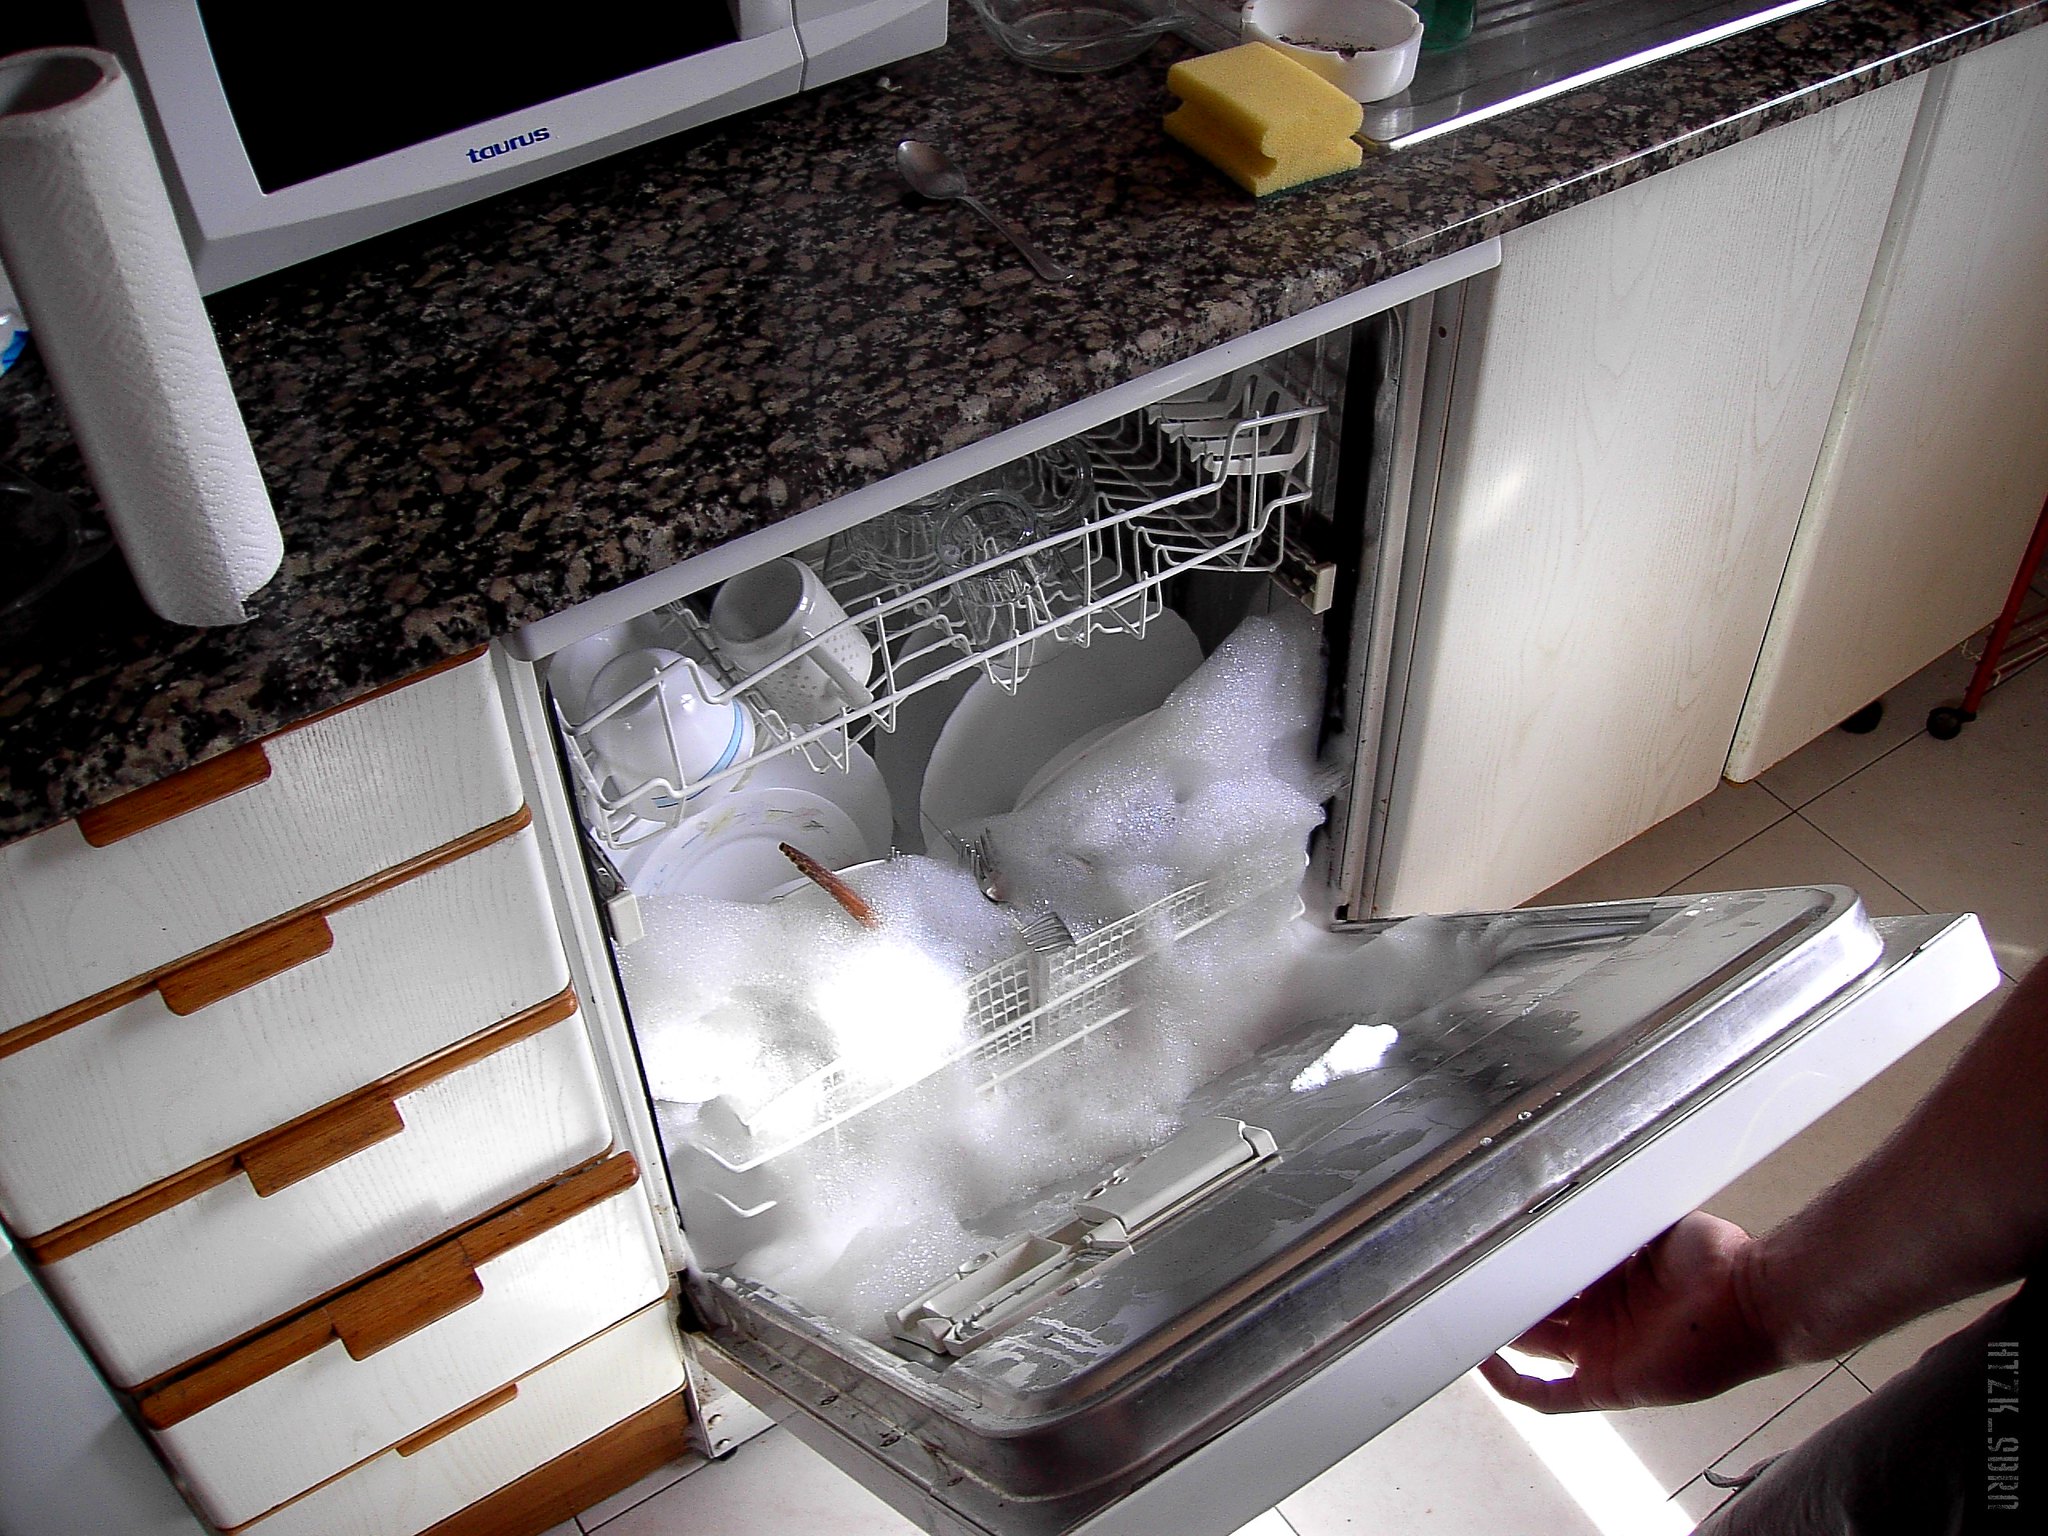 Los lavavajillas pueden consumir mucha agua o electricidad sino se toman las medidas adecuadas. Foto: Flickr